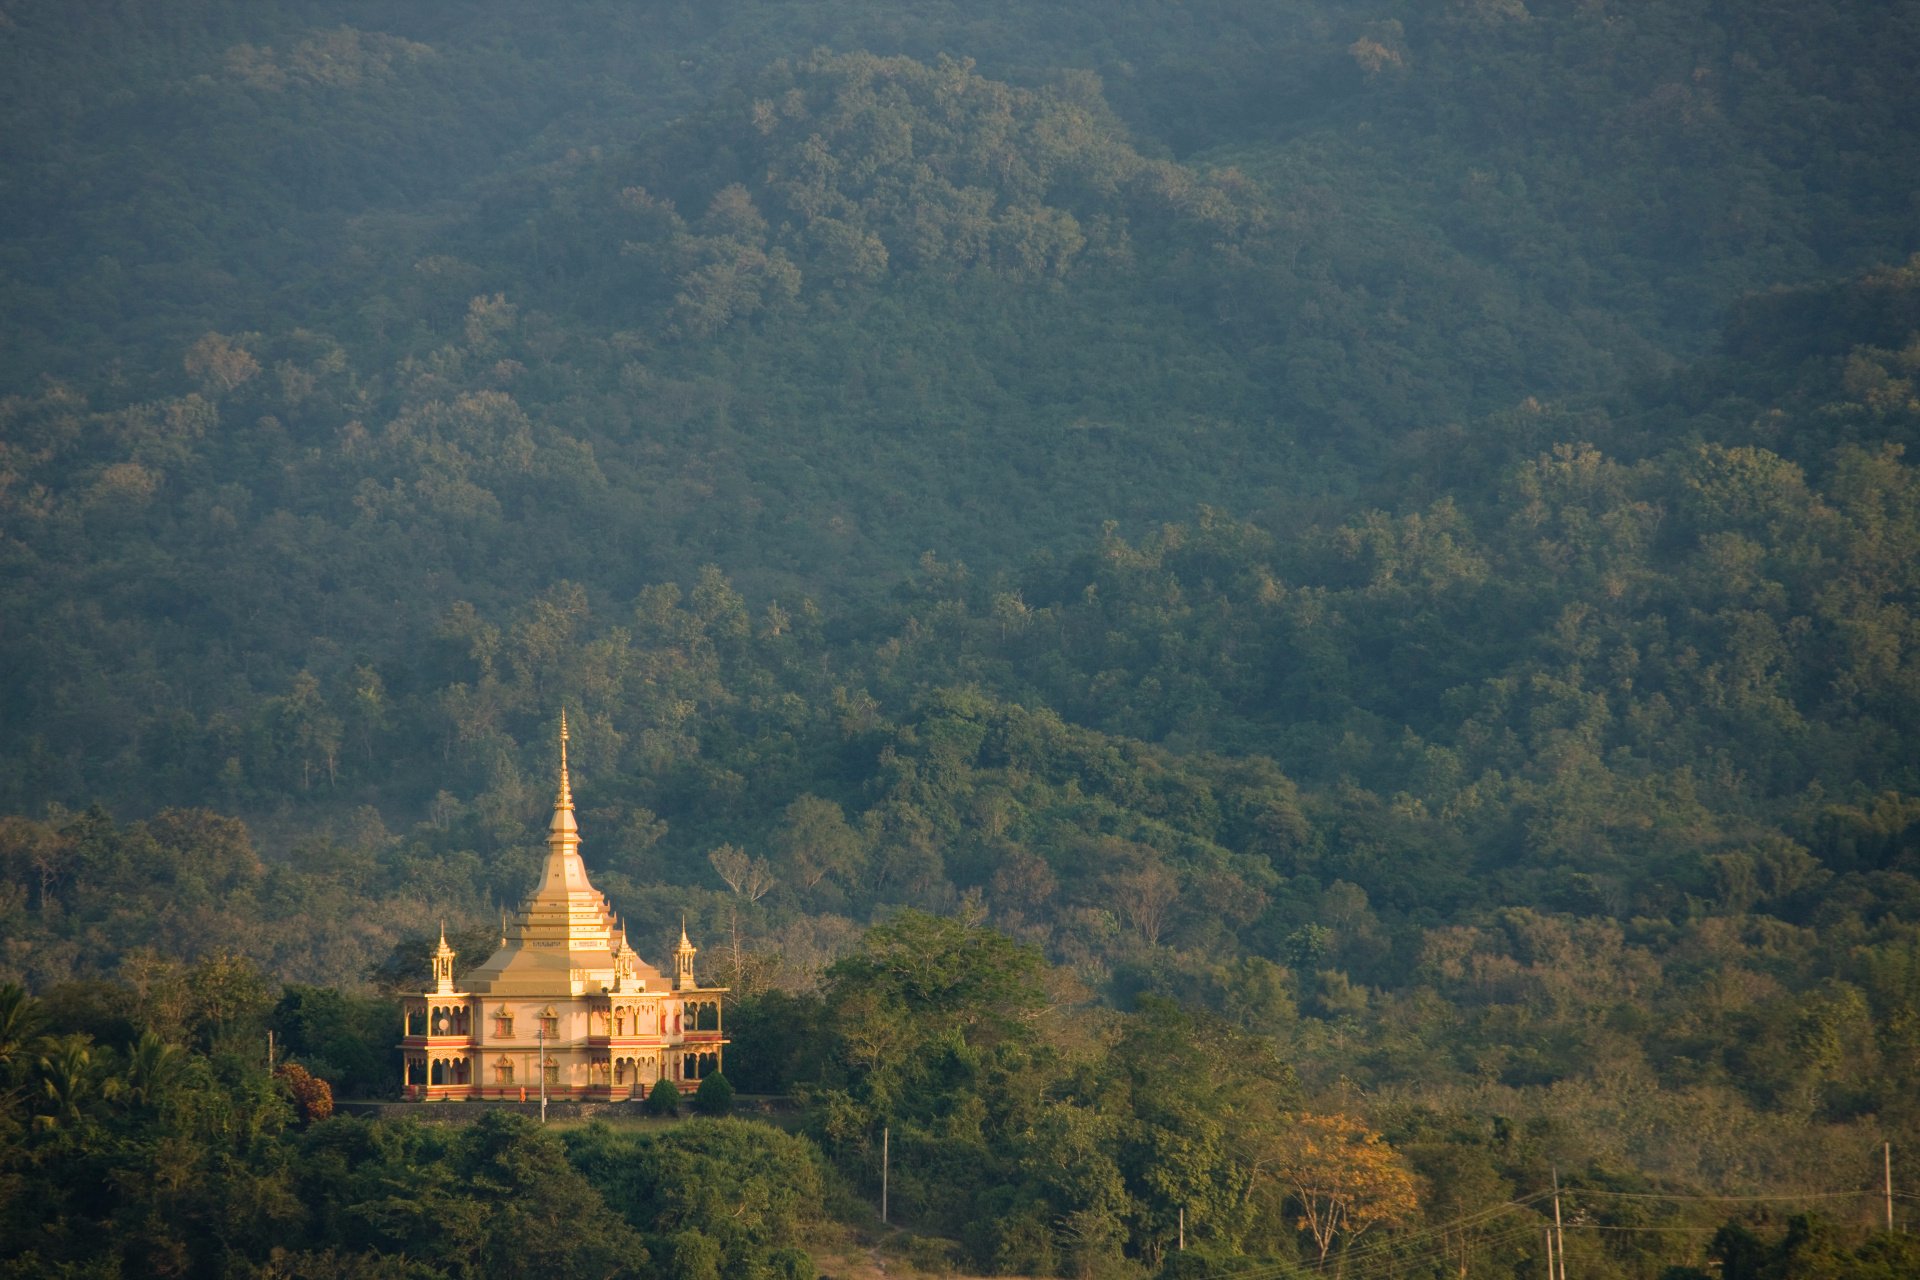 琅勃拉邦瑰丽酒店今天于蓊郁荗密的老挝森林中隆重开幕 – 翼旅网ETopTour